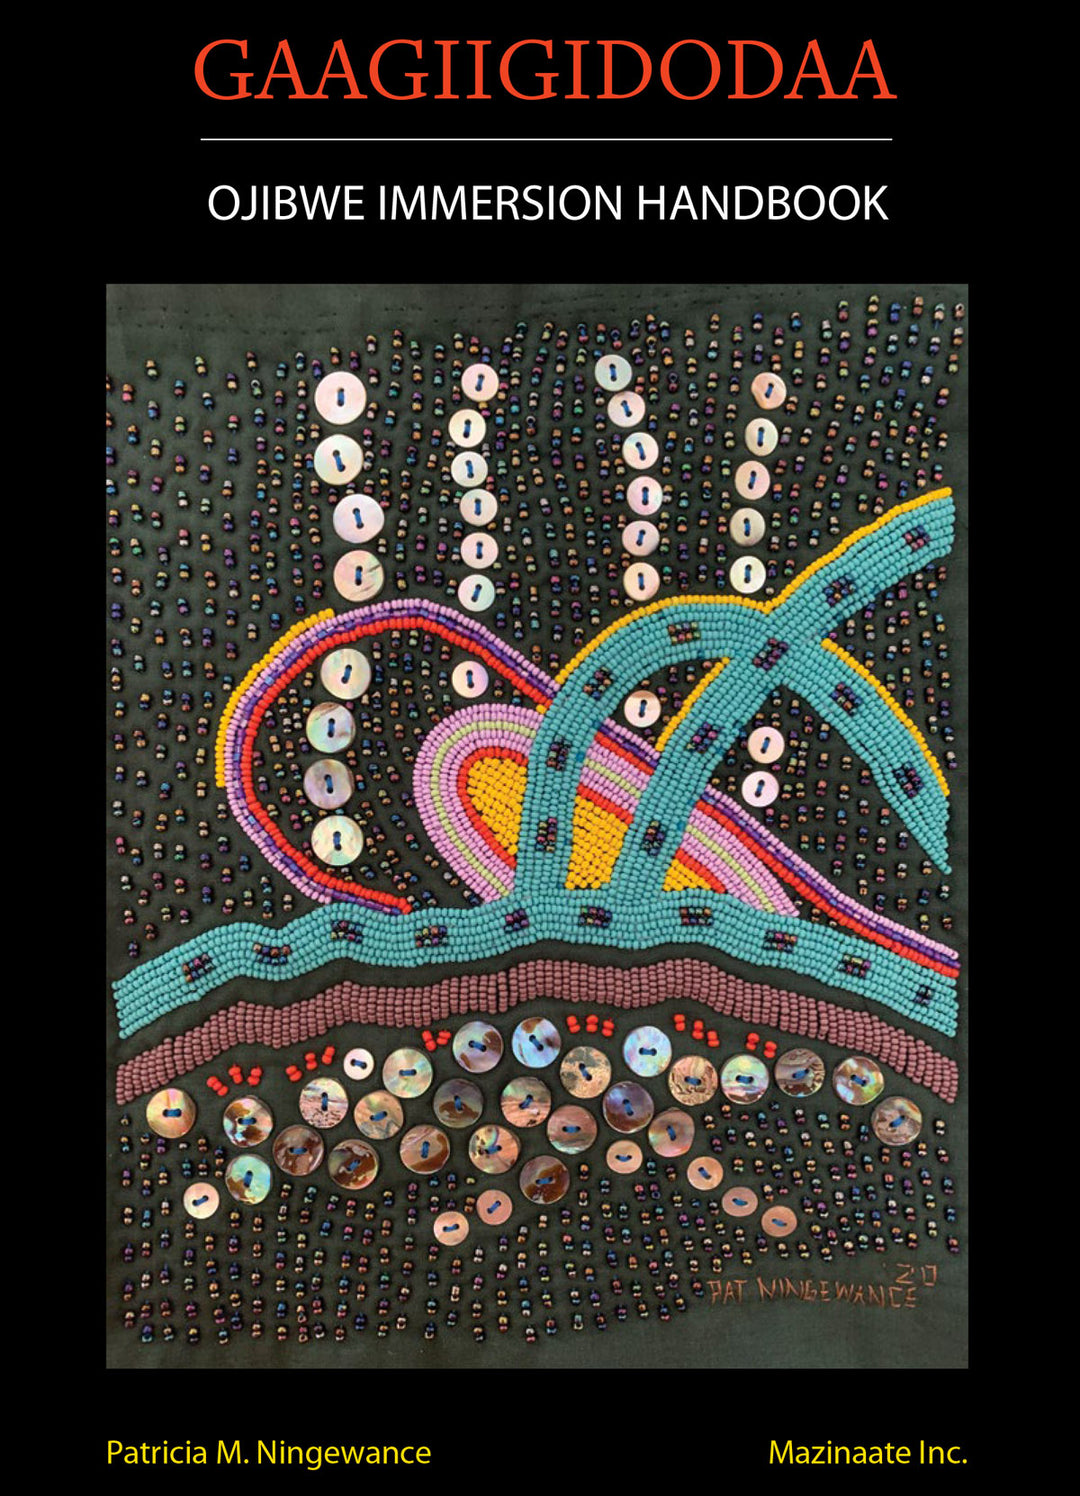 Gaagiigidodaa: Ojibwe Immersion Handbook by Patricia M. Ningewance